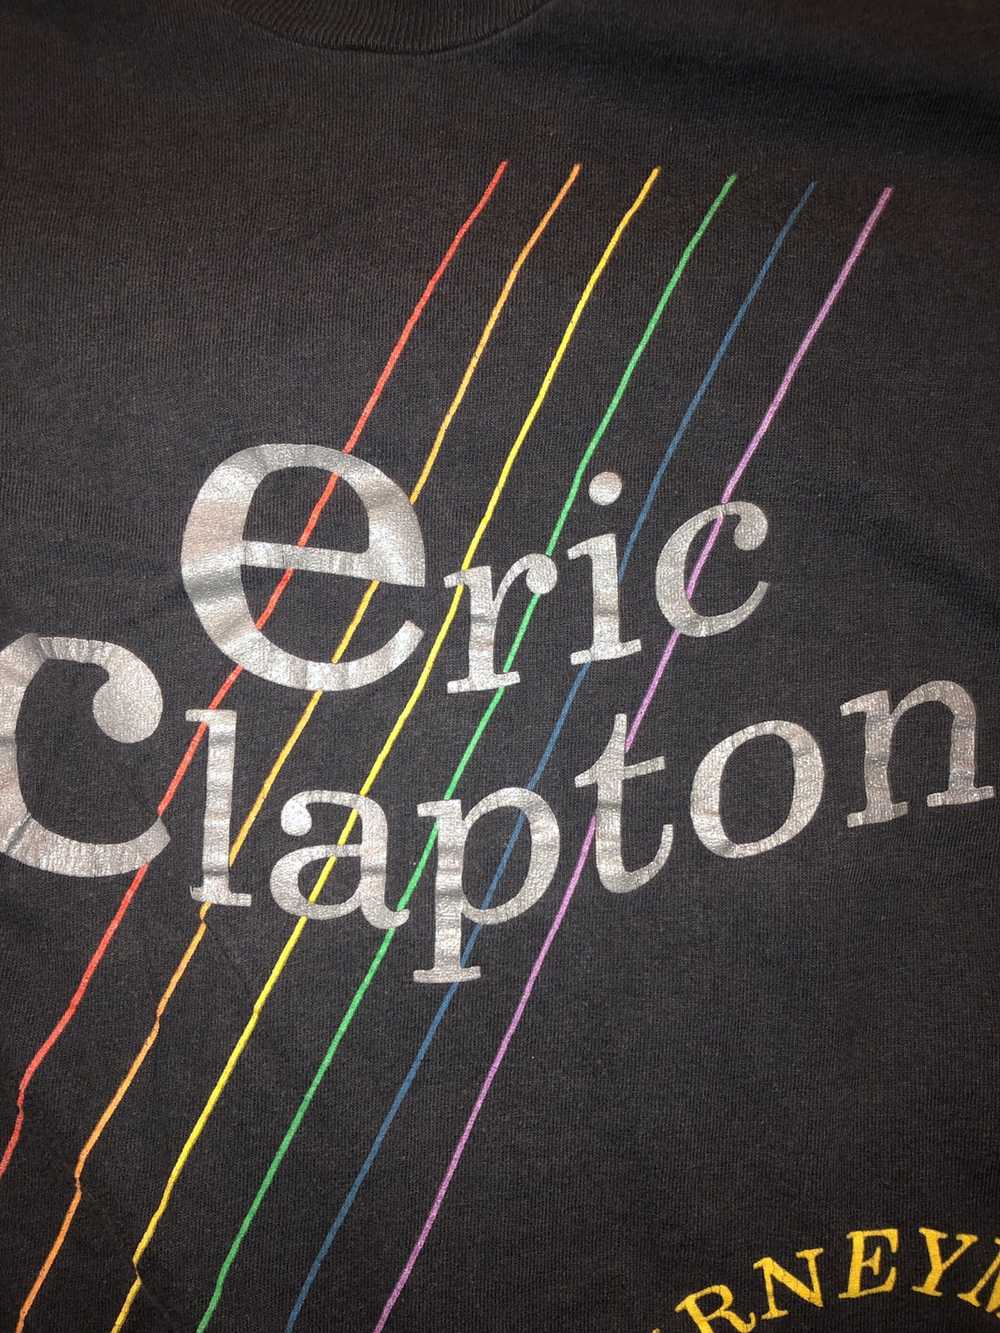 Vintage Vintage Eric Clapton 1990 tour shirt - image 2